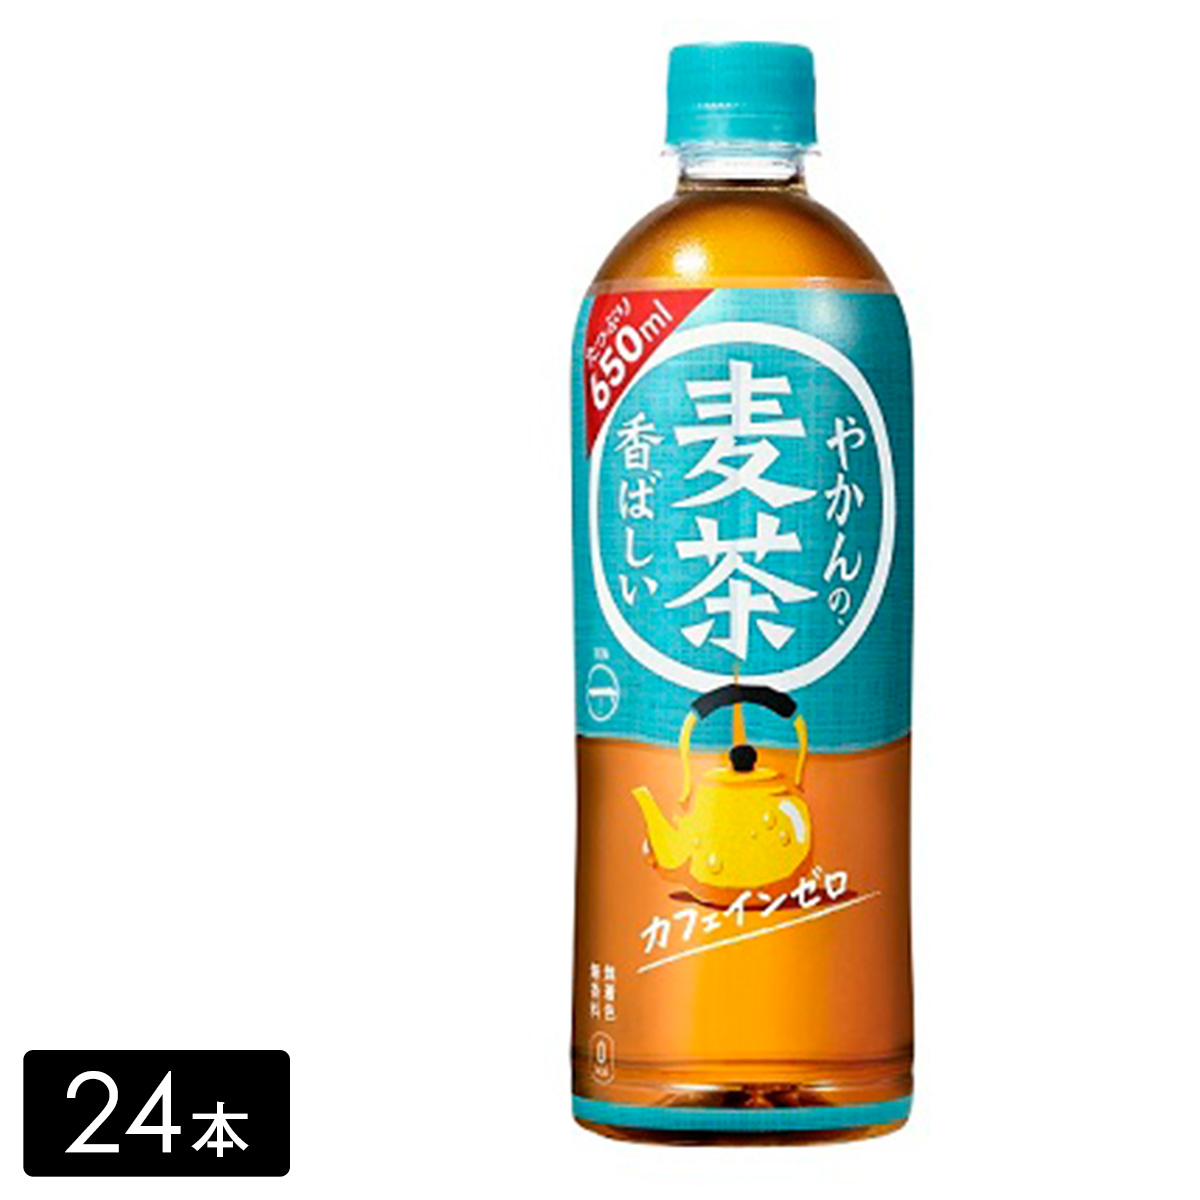 【送料無料】やかんの麦茶 from 一(はじめ) 650mL×24本(1箱)